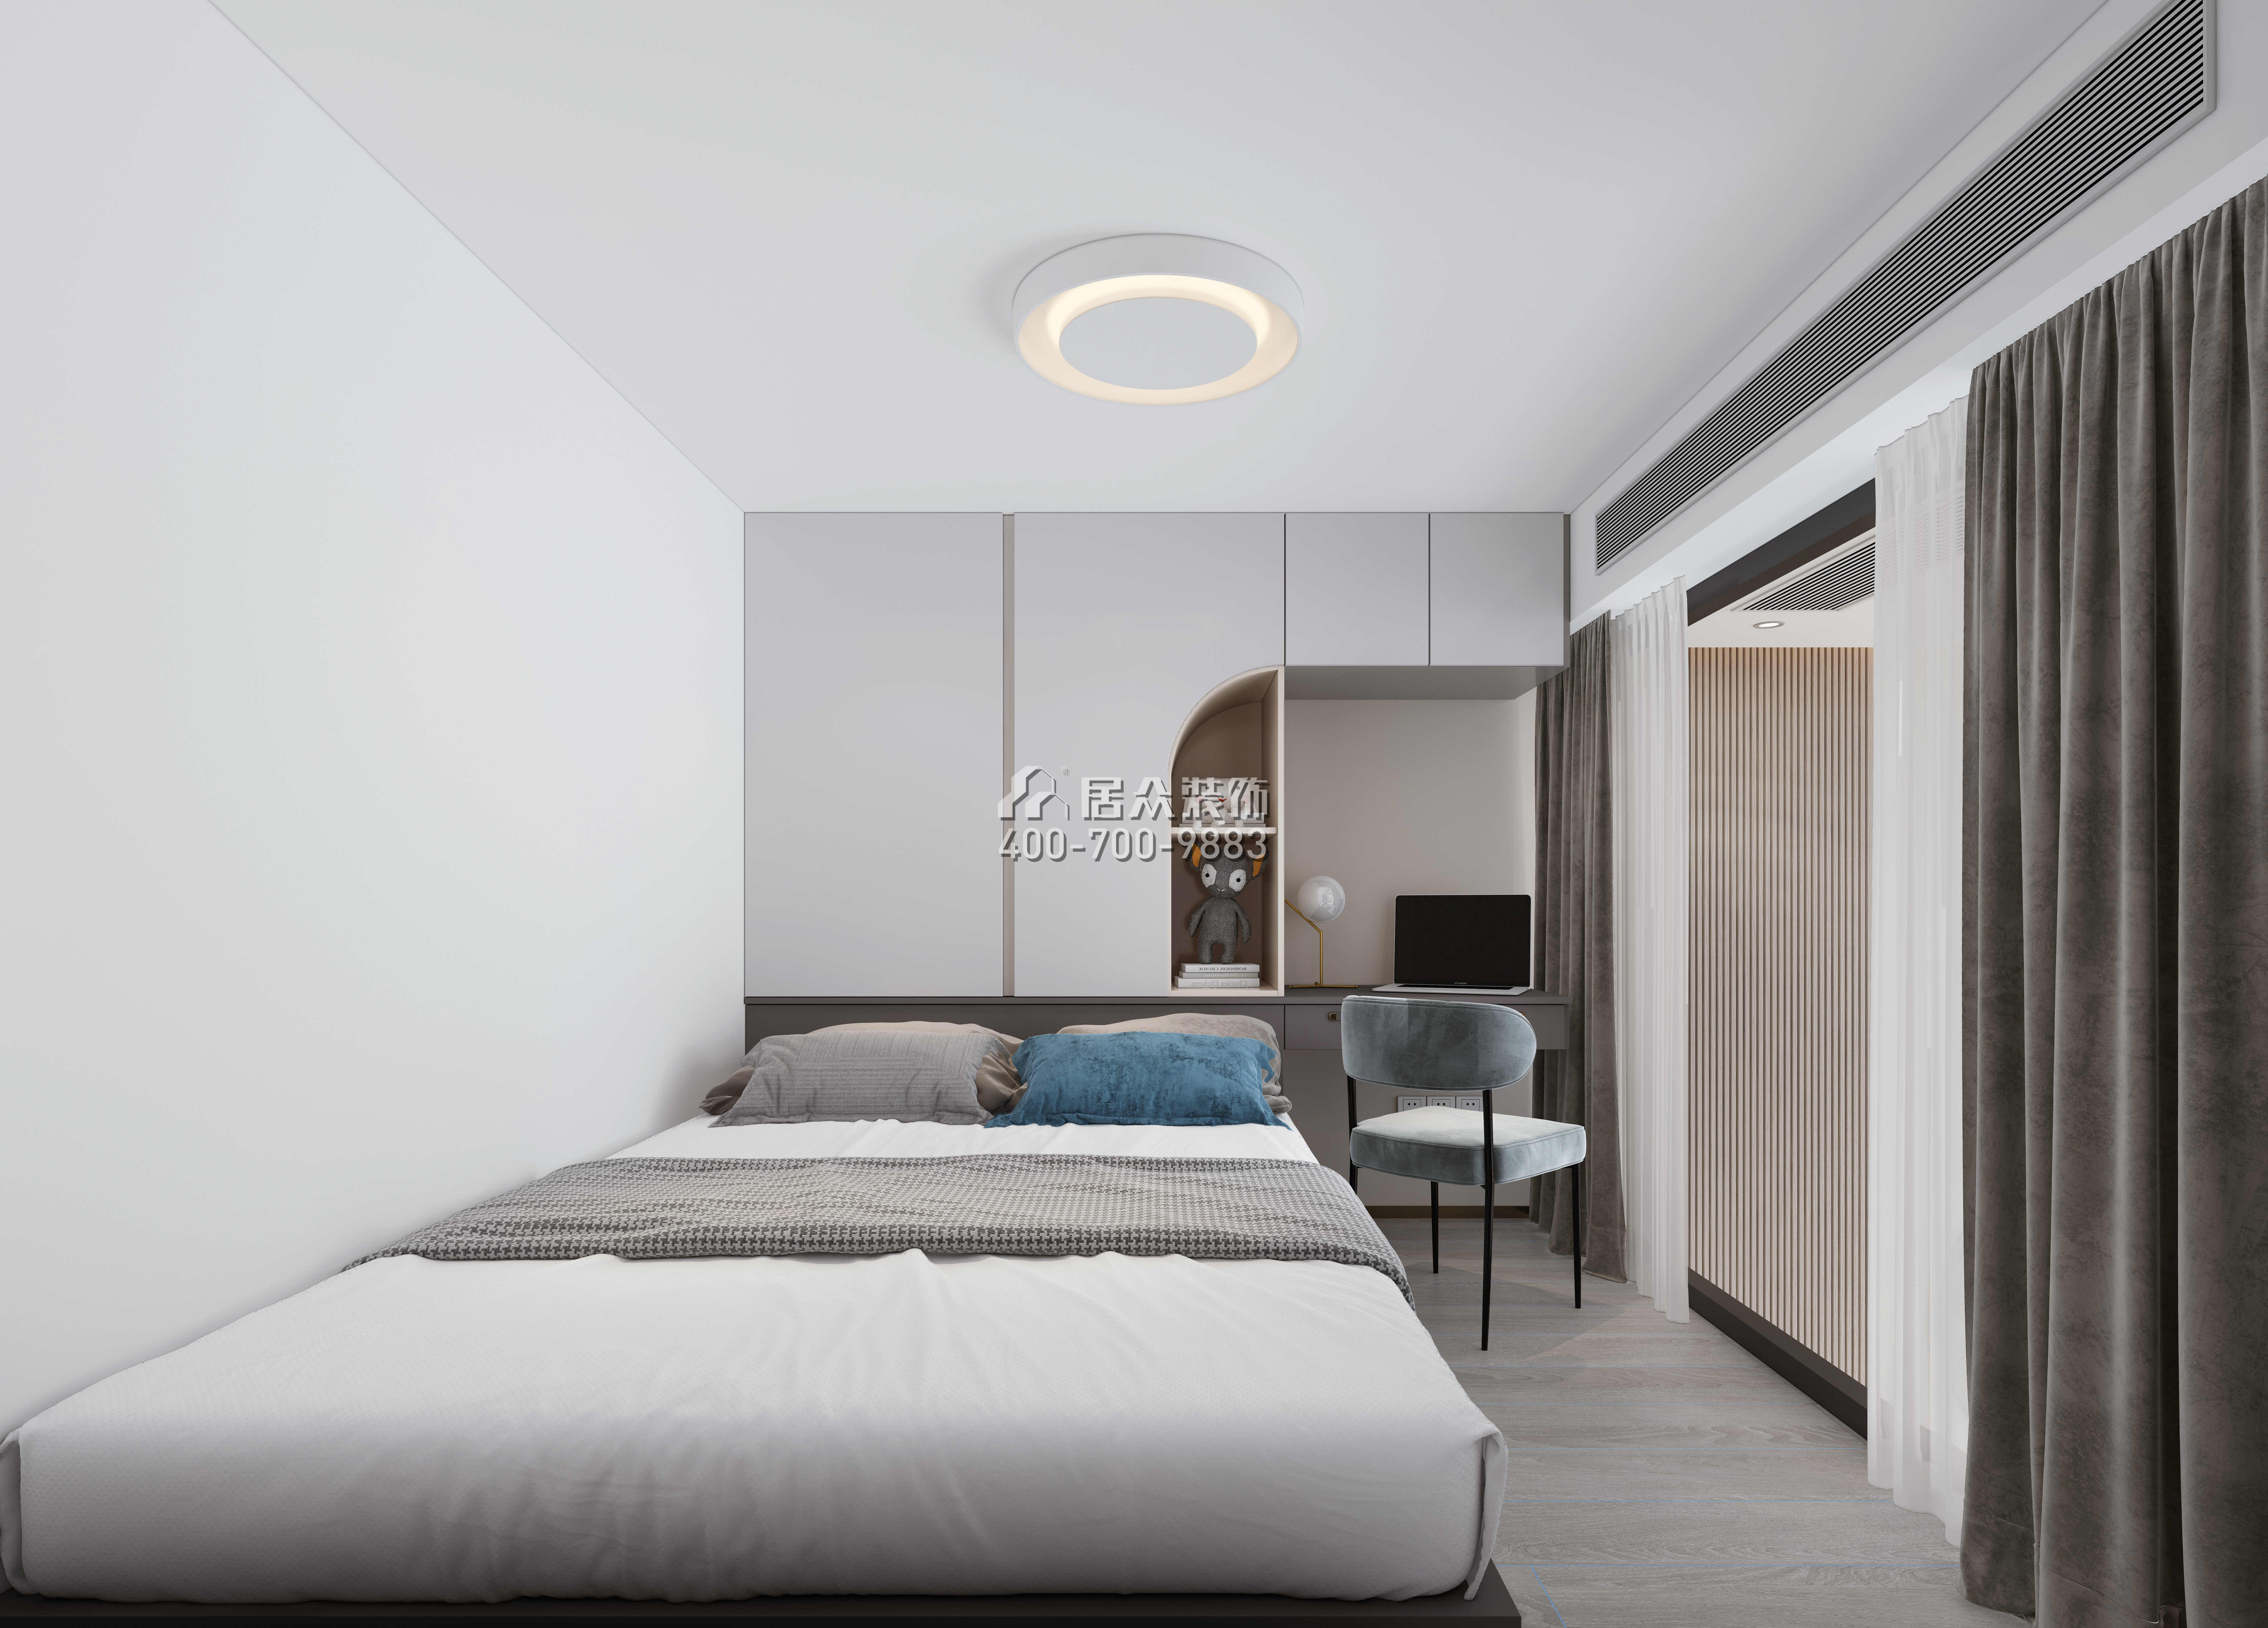 萬科臻灣匯110平方米現代簡約風格平層戶型臥室裝修效果圖